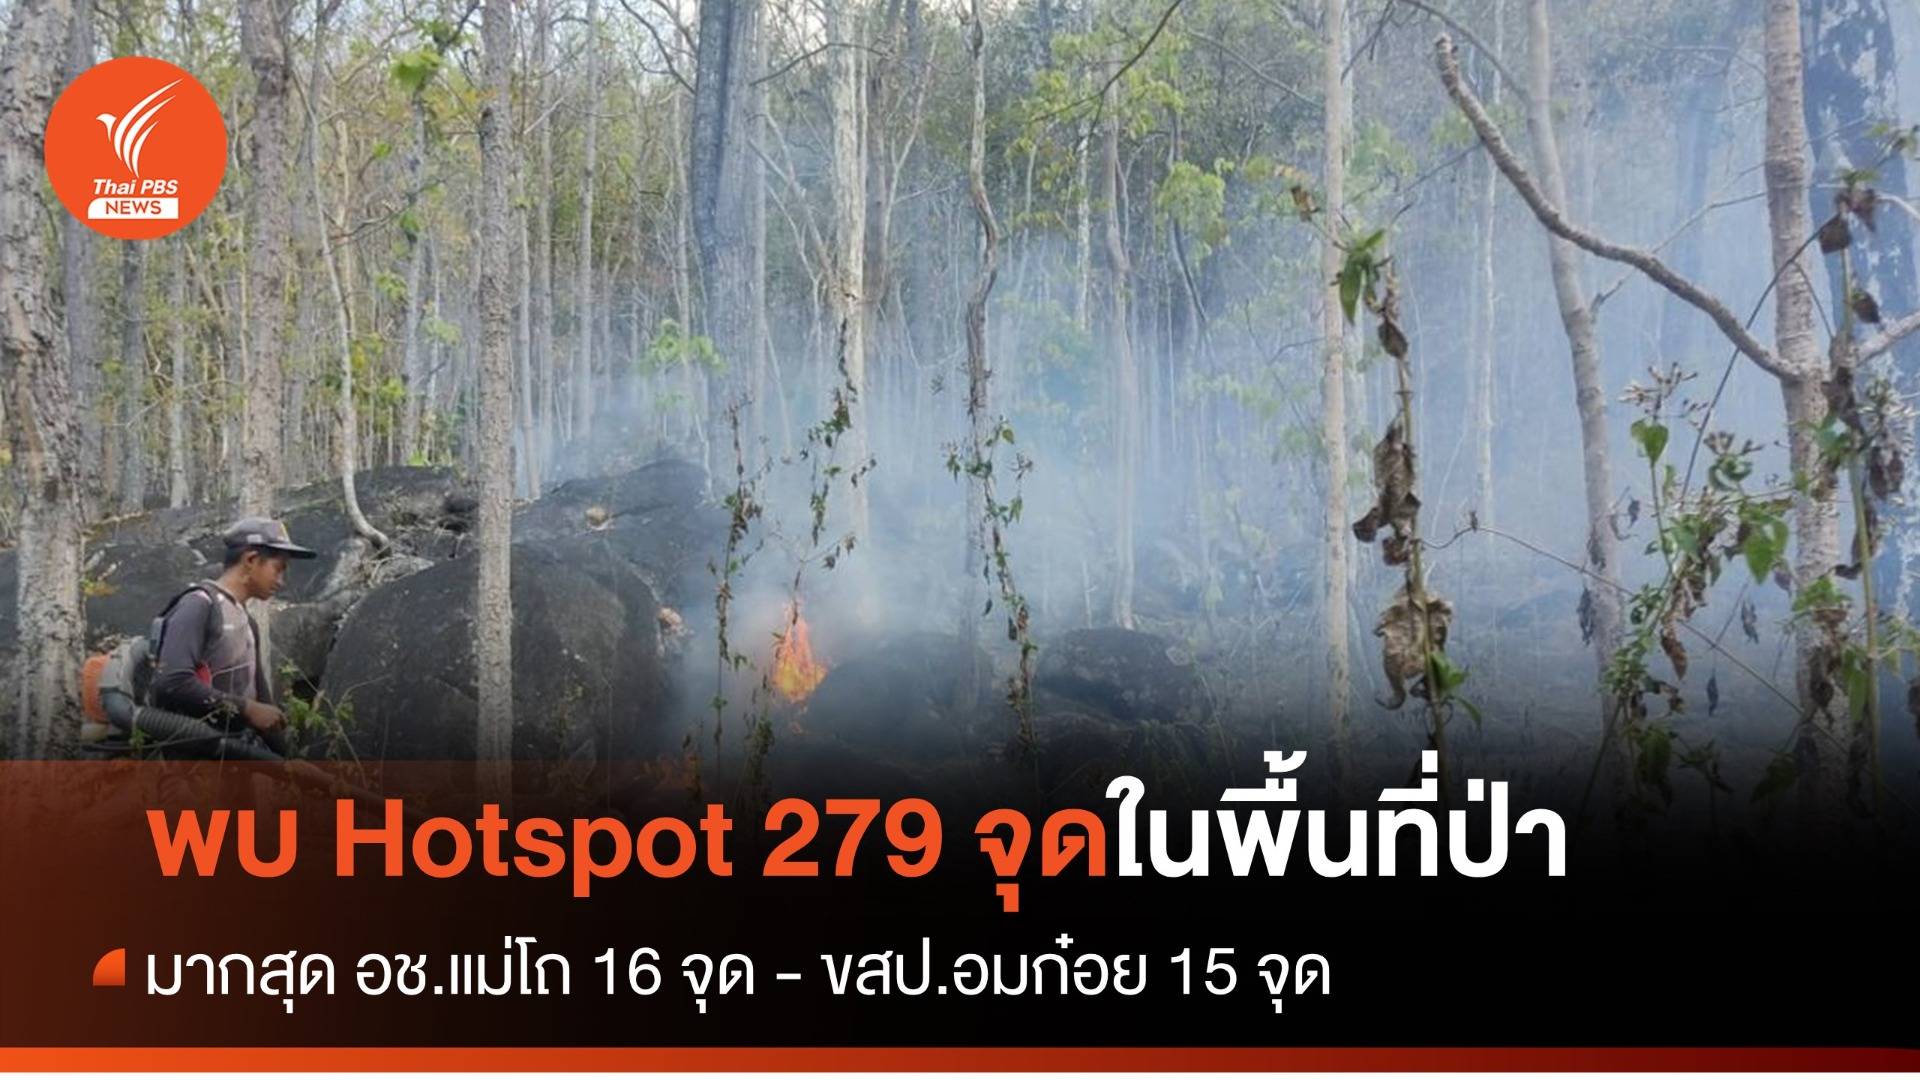 พบ Hotspot ในพื้นที่ป่า 279 จุด มากสุดอุทยานฯ แม่โถ 16 จุด